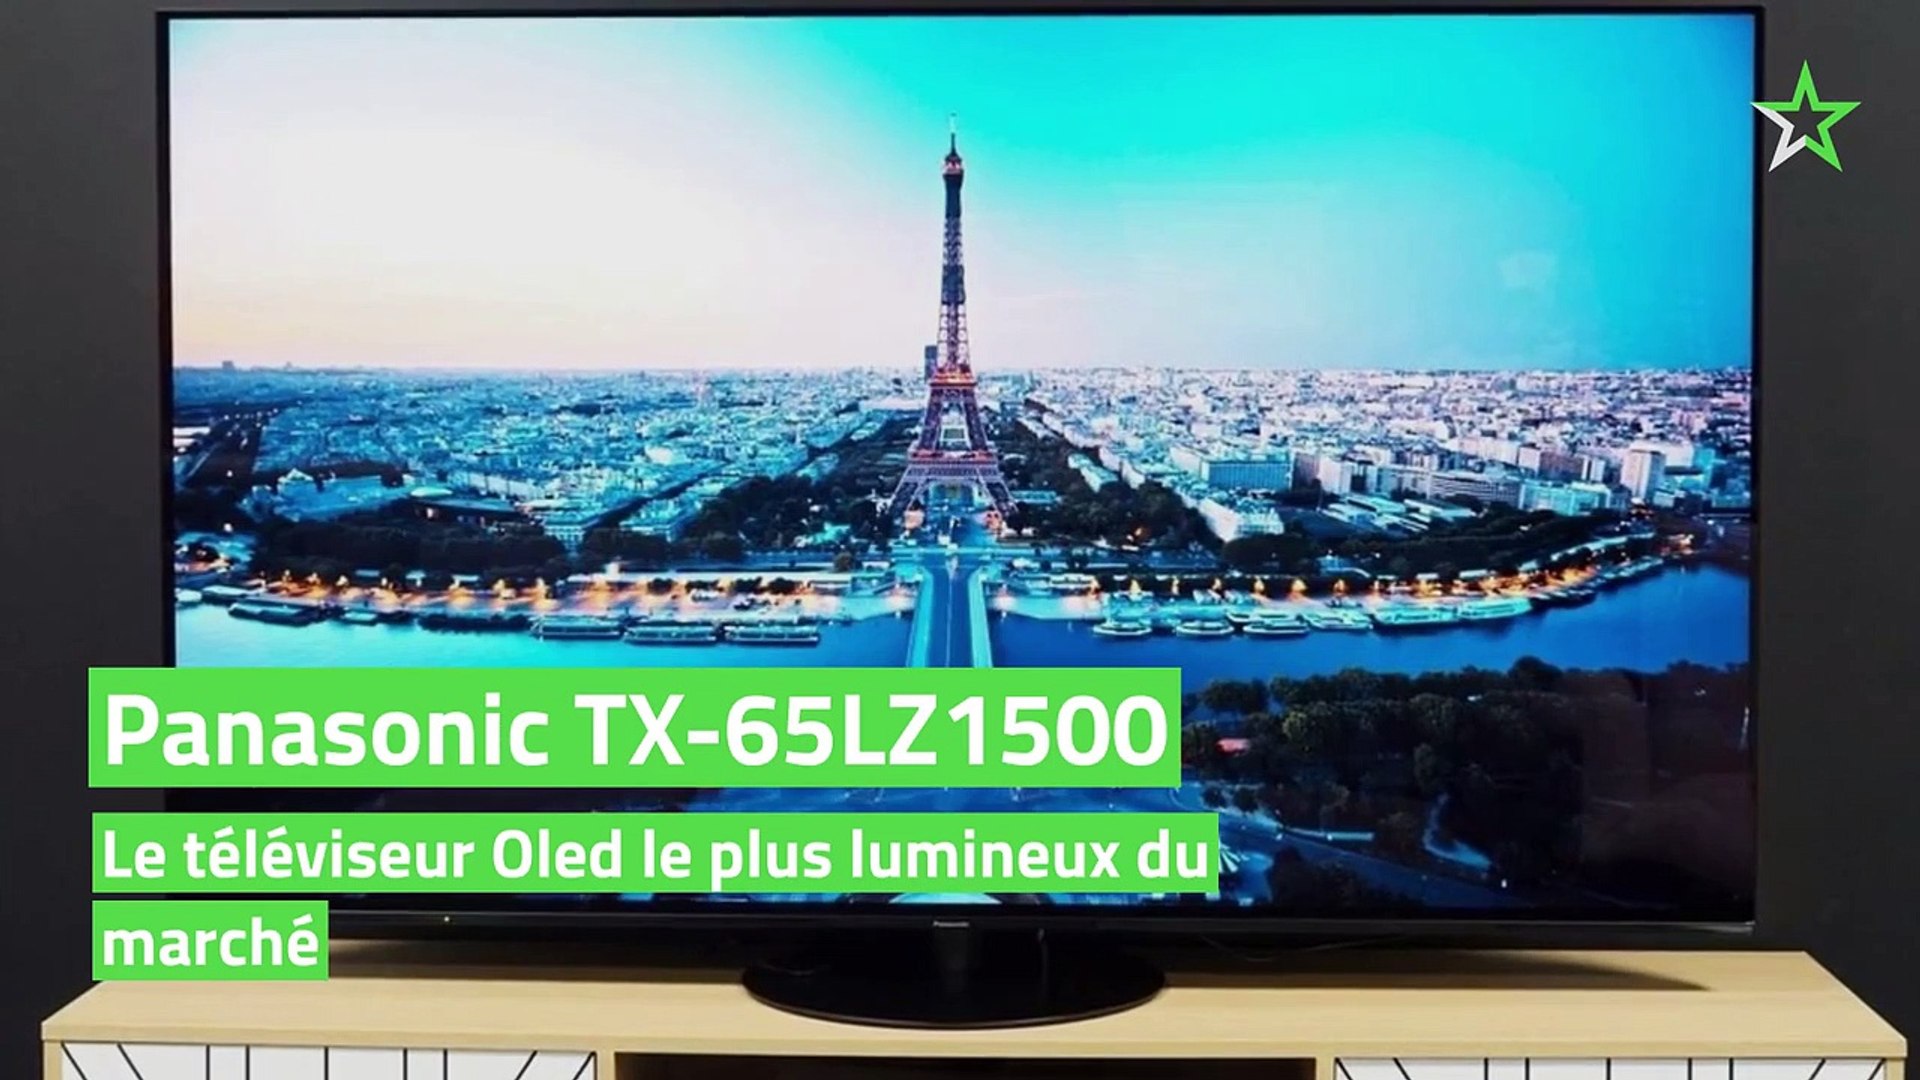 Test Panasonic TX-65LZ1500 : le téléviseur Oled le plus lumineux du marché  - Vidéo Dailymotion